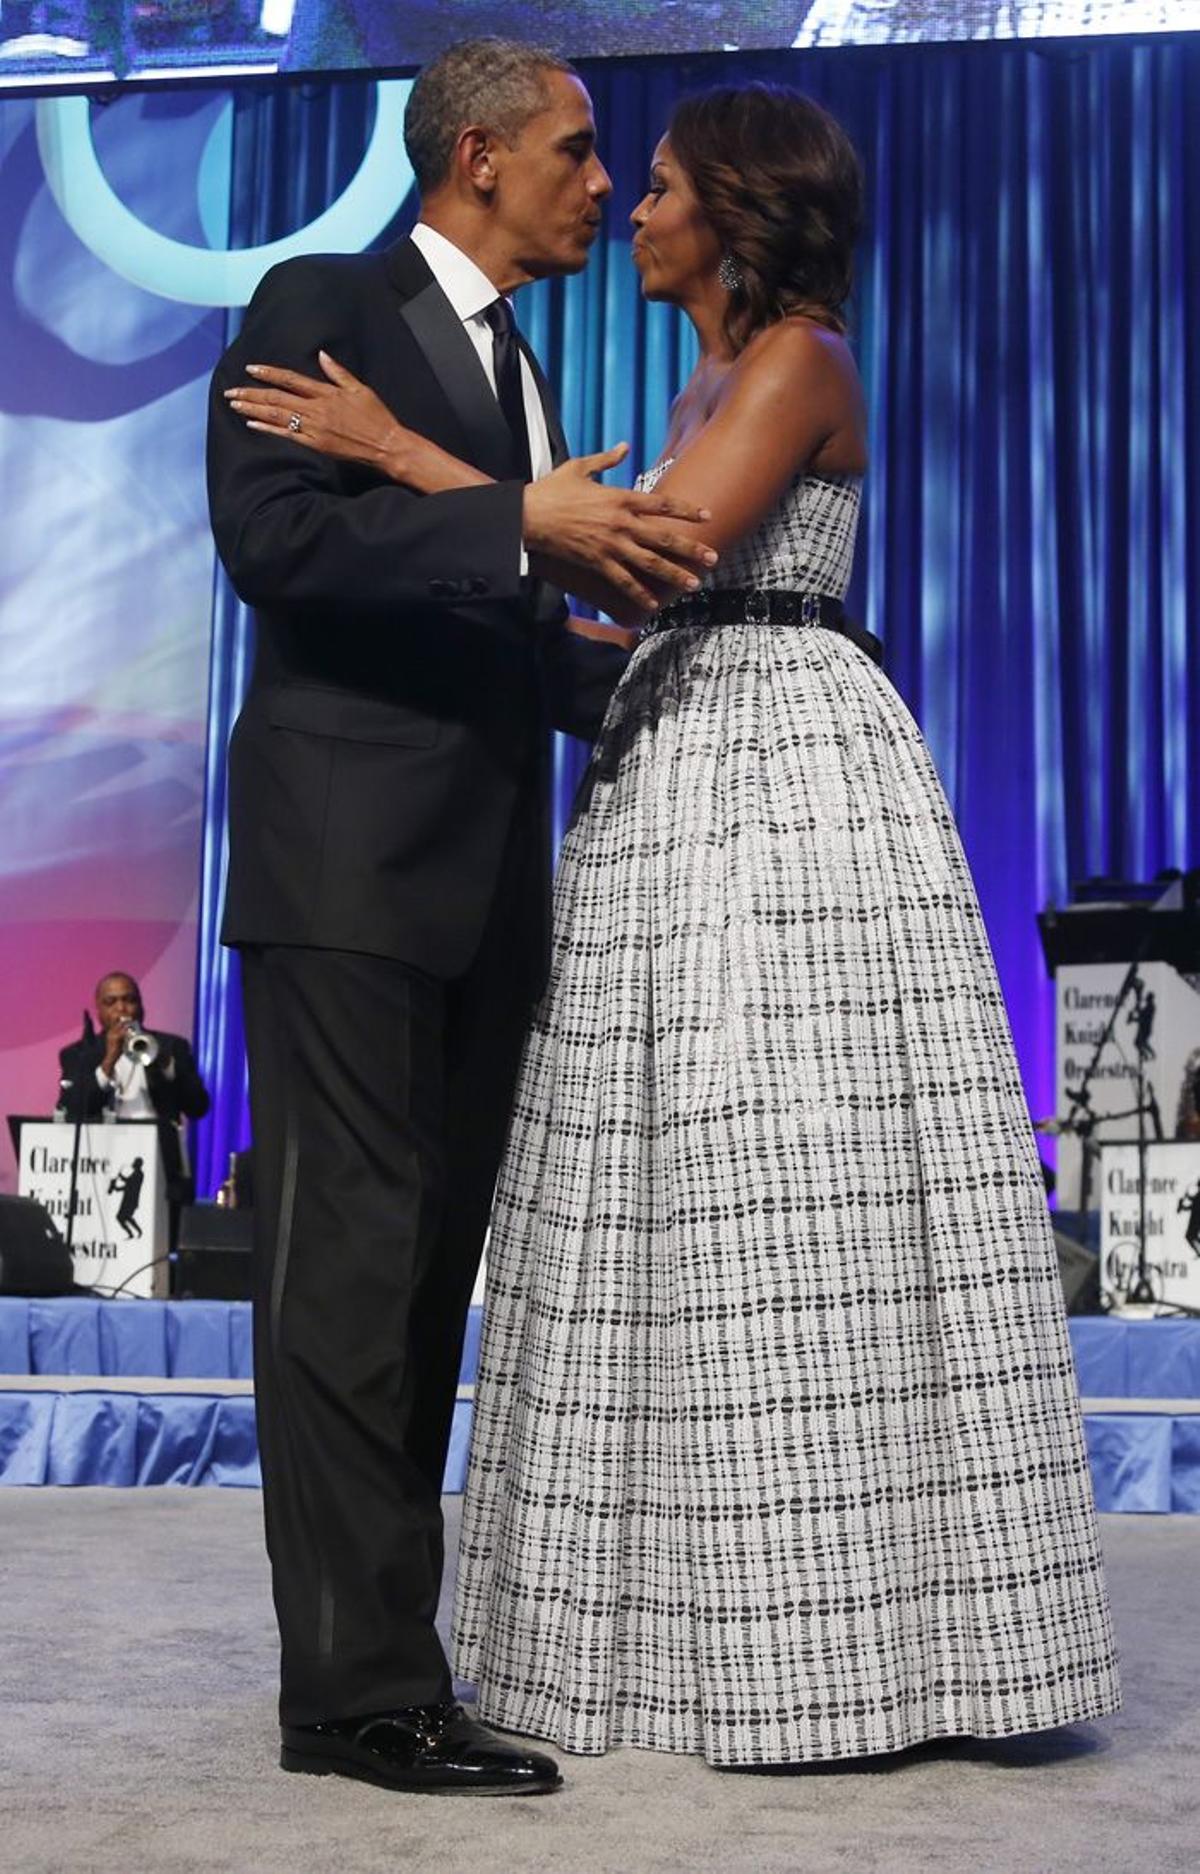 Barack y Michelle Obama, pedida y discusión